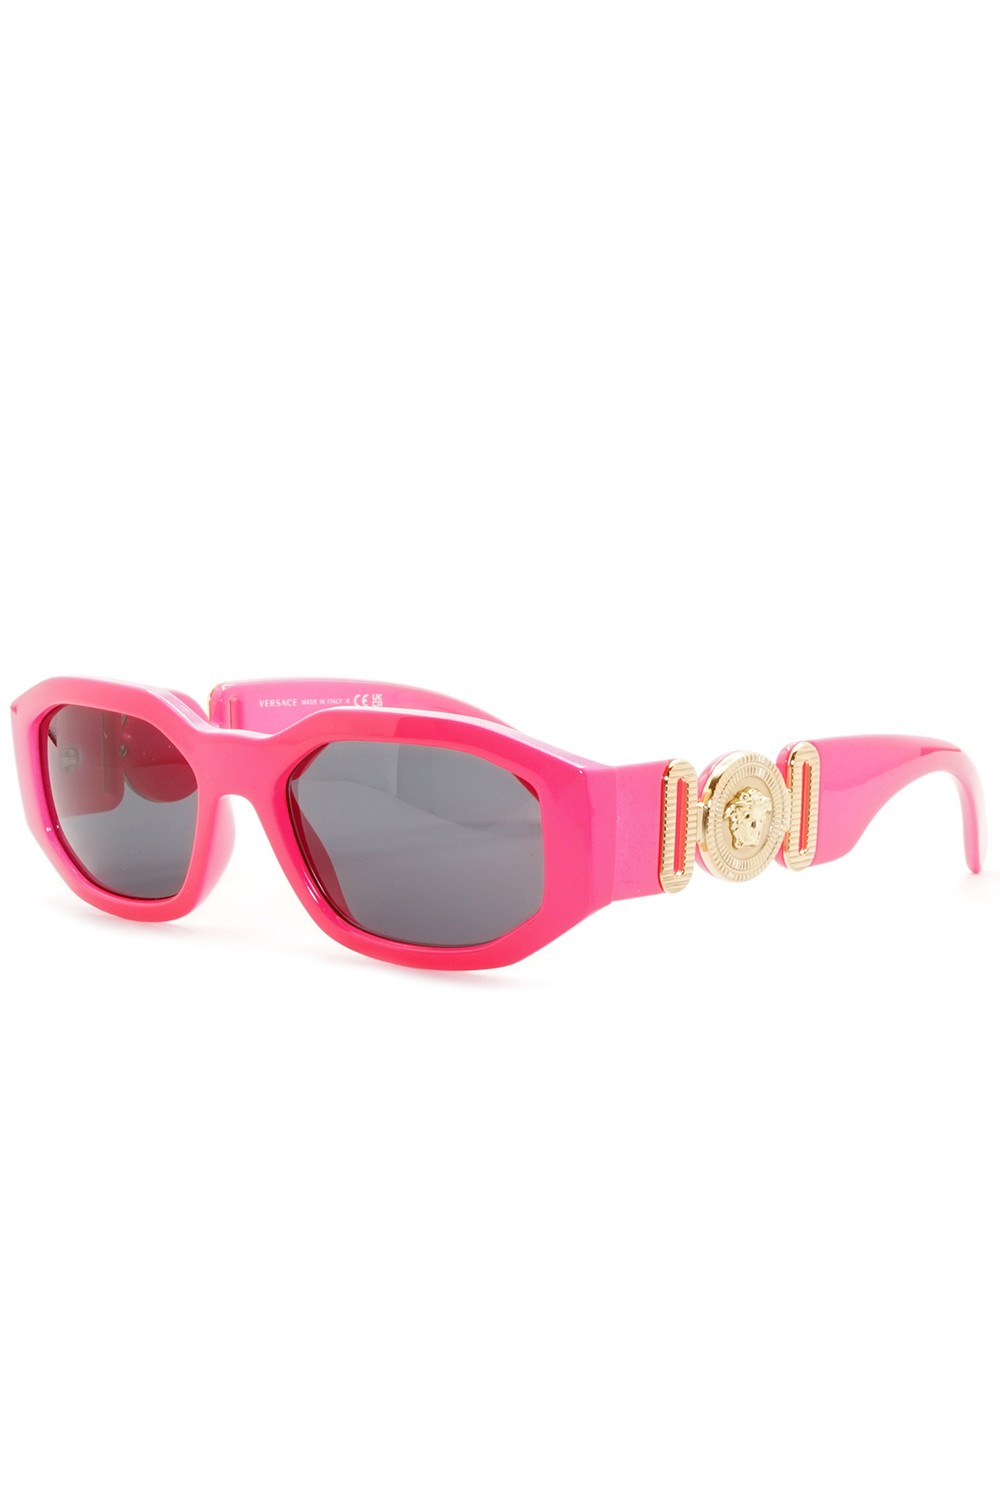 Versace - Occhiali da sole in celluloide rettangolari unisex rosa - 4361 5318/87